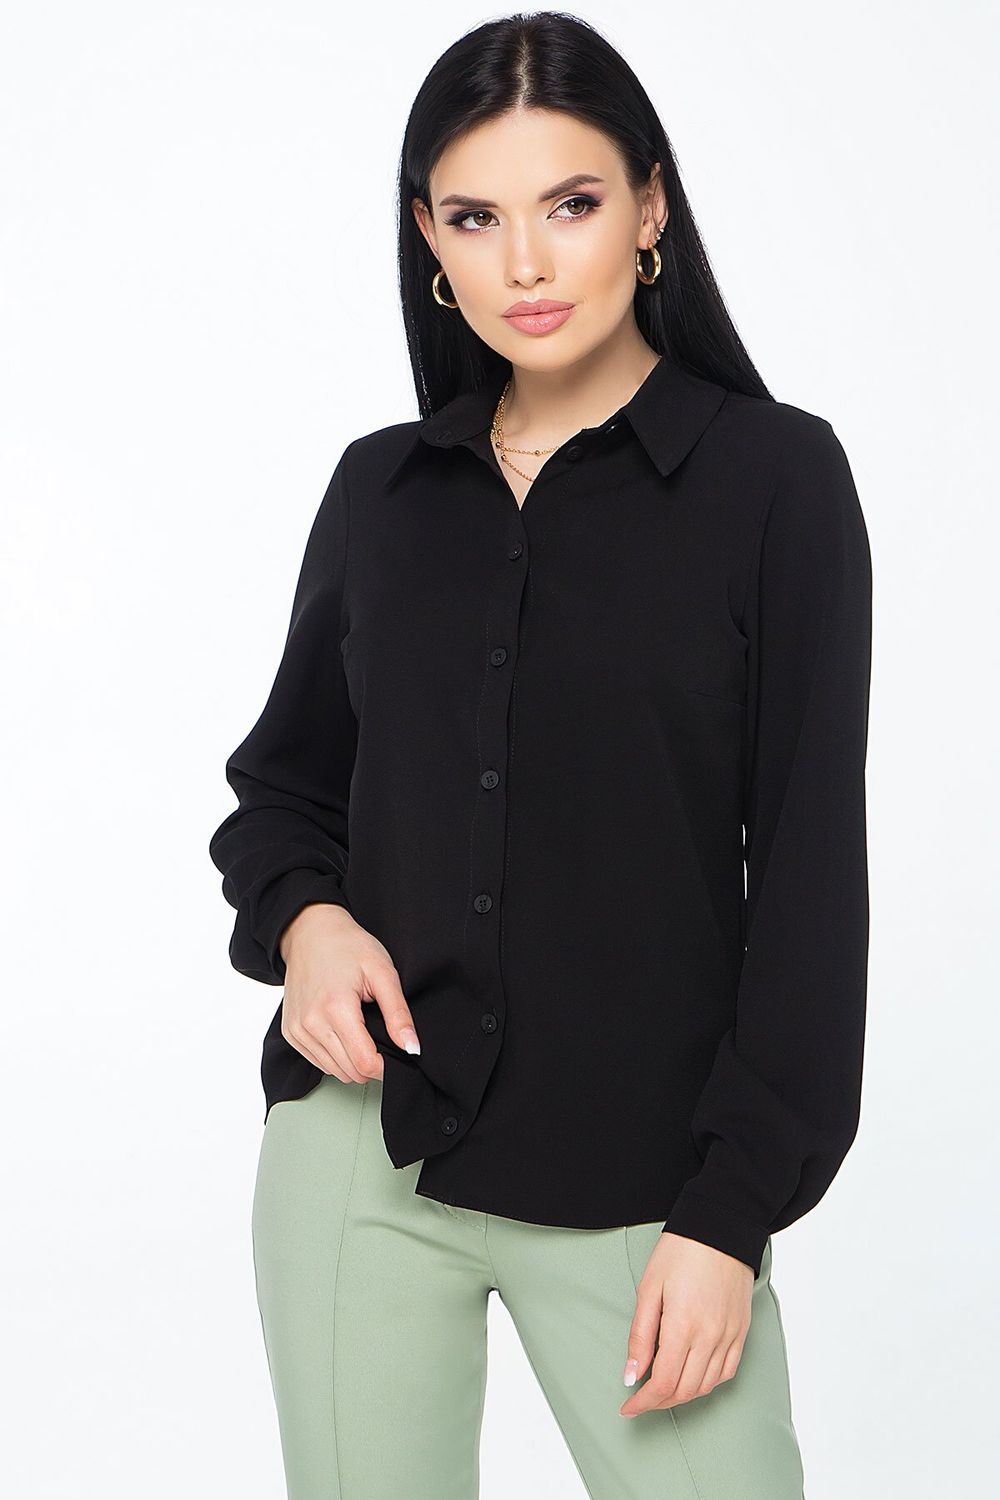 Женская классическая рубашка черного цвета - фото